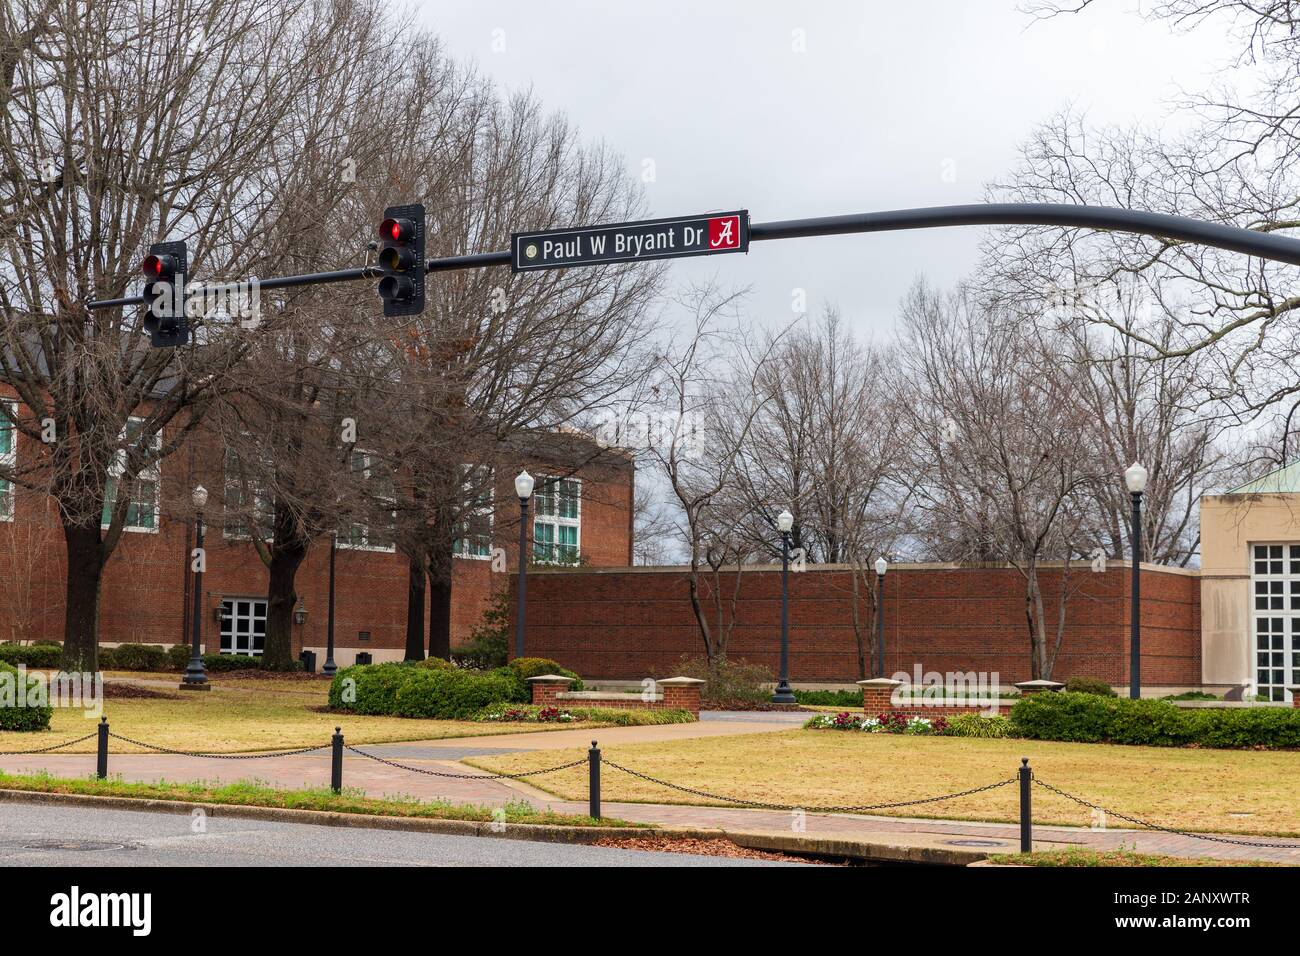 Tuscaloosa, AL/USA - Dezember 29, 2019: Paul W Bryant Dr Zeichen auf dem Campus der Universität von Alabama Stockfoto